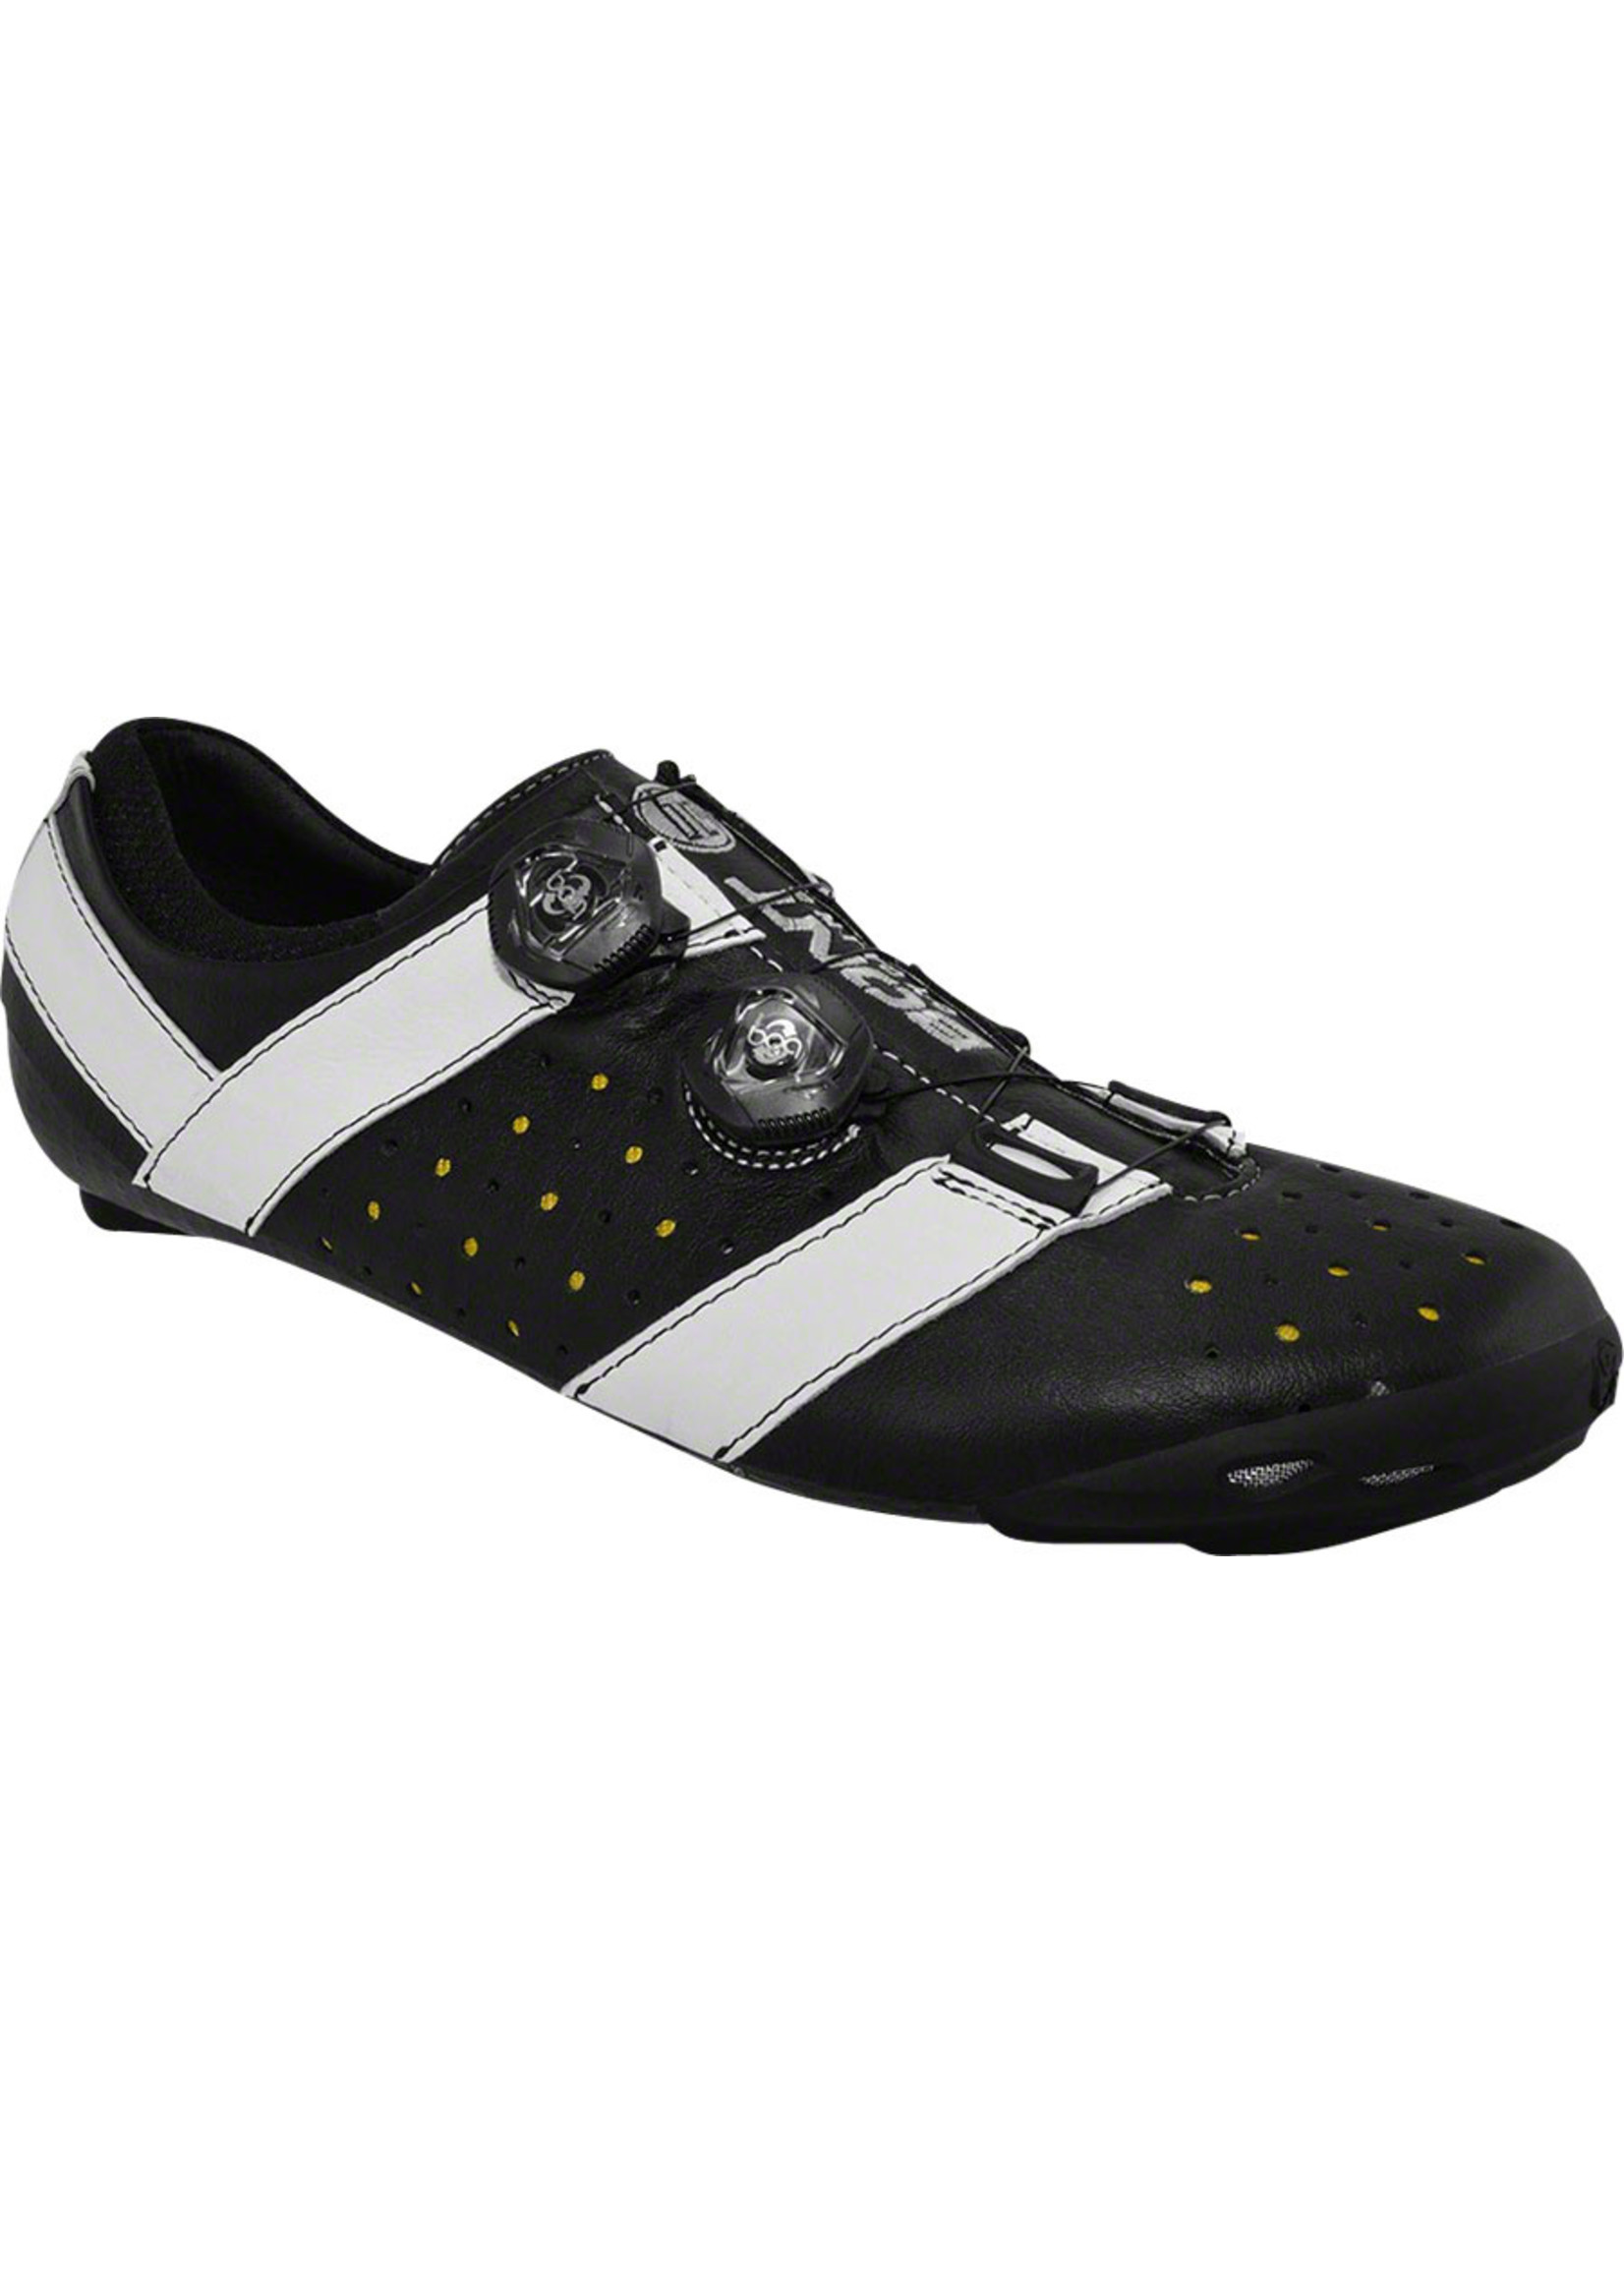 Bont Bont Vaypor+ Road Cycling Shoe: Black/White Size 44